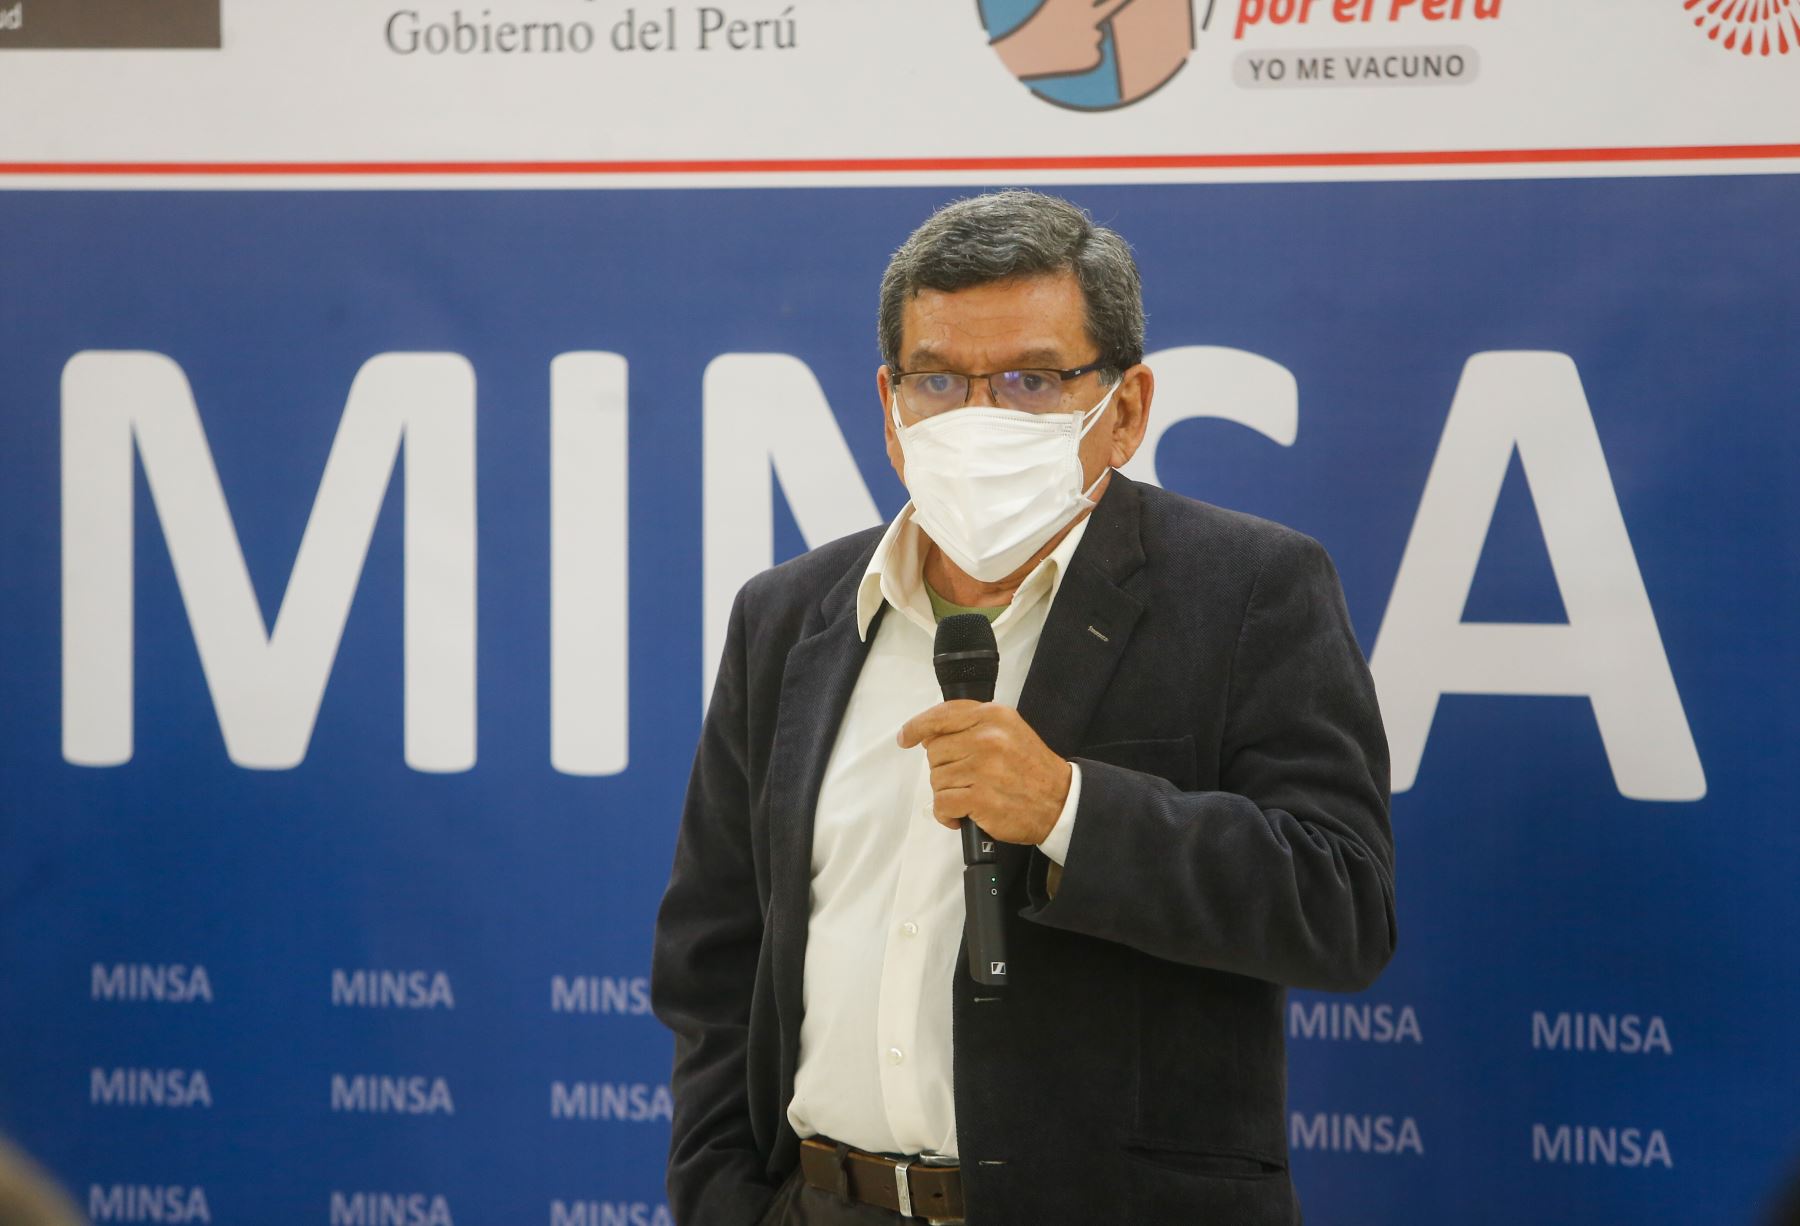 Hernando Cevallos: Todos los peruanos debemos cerrar filas contra la pandemia